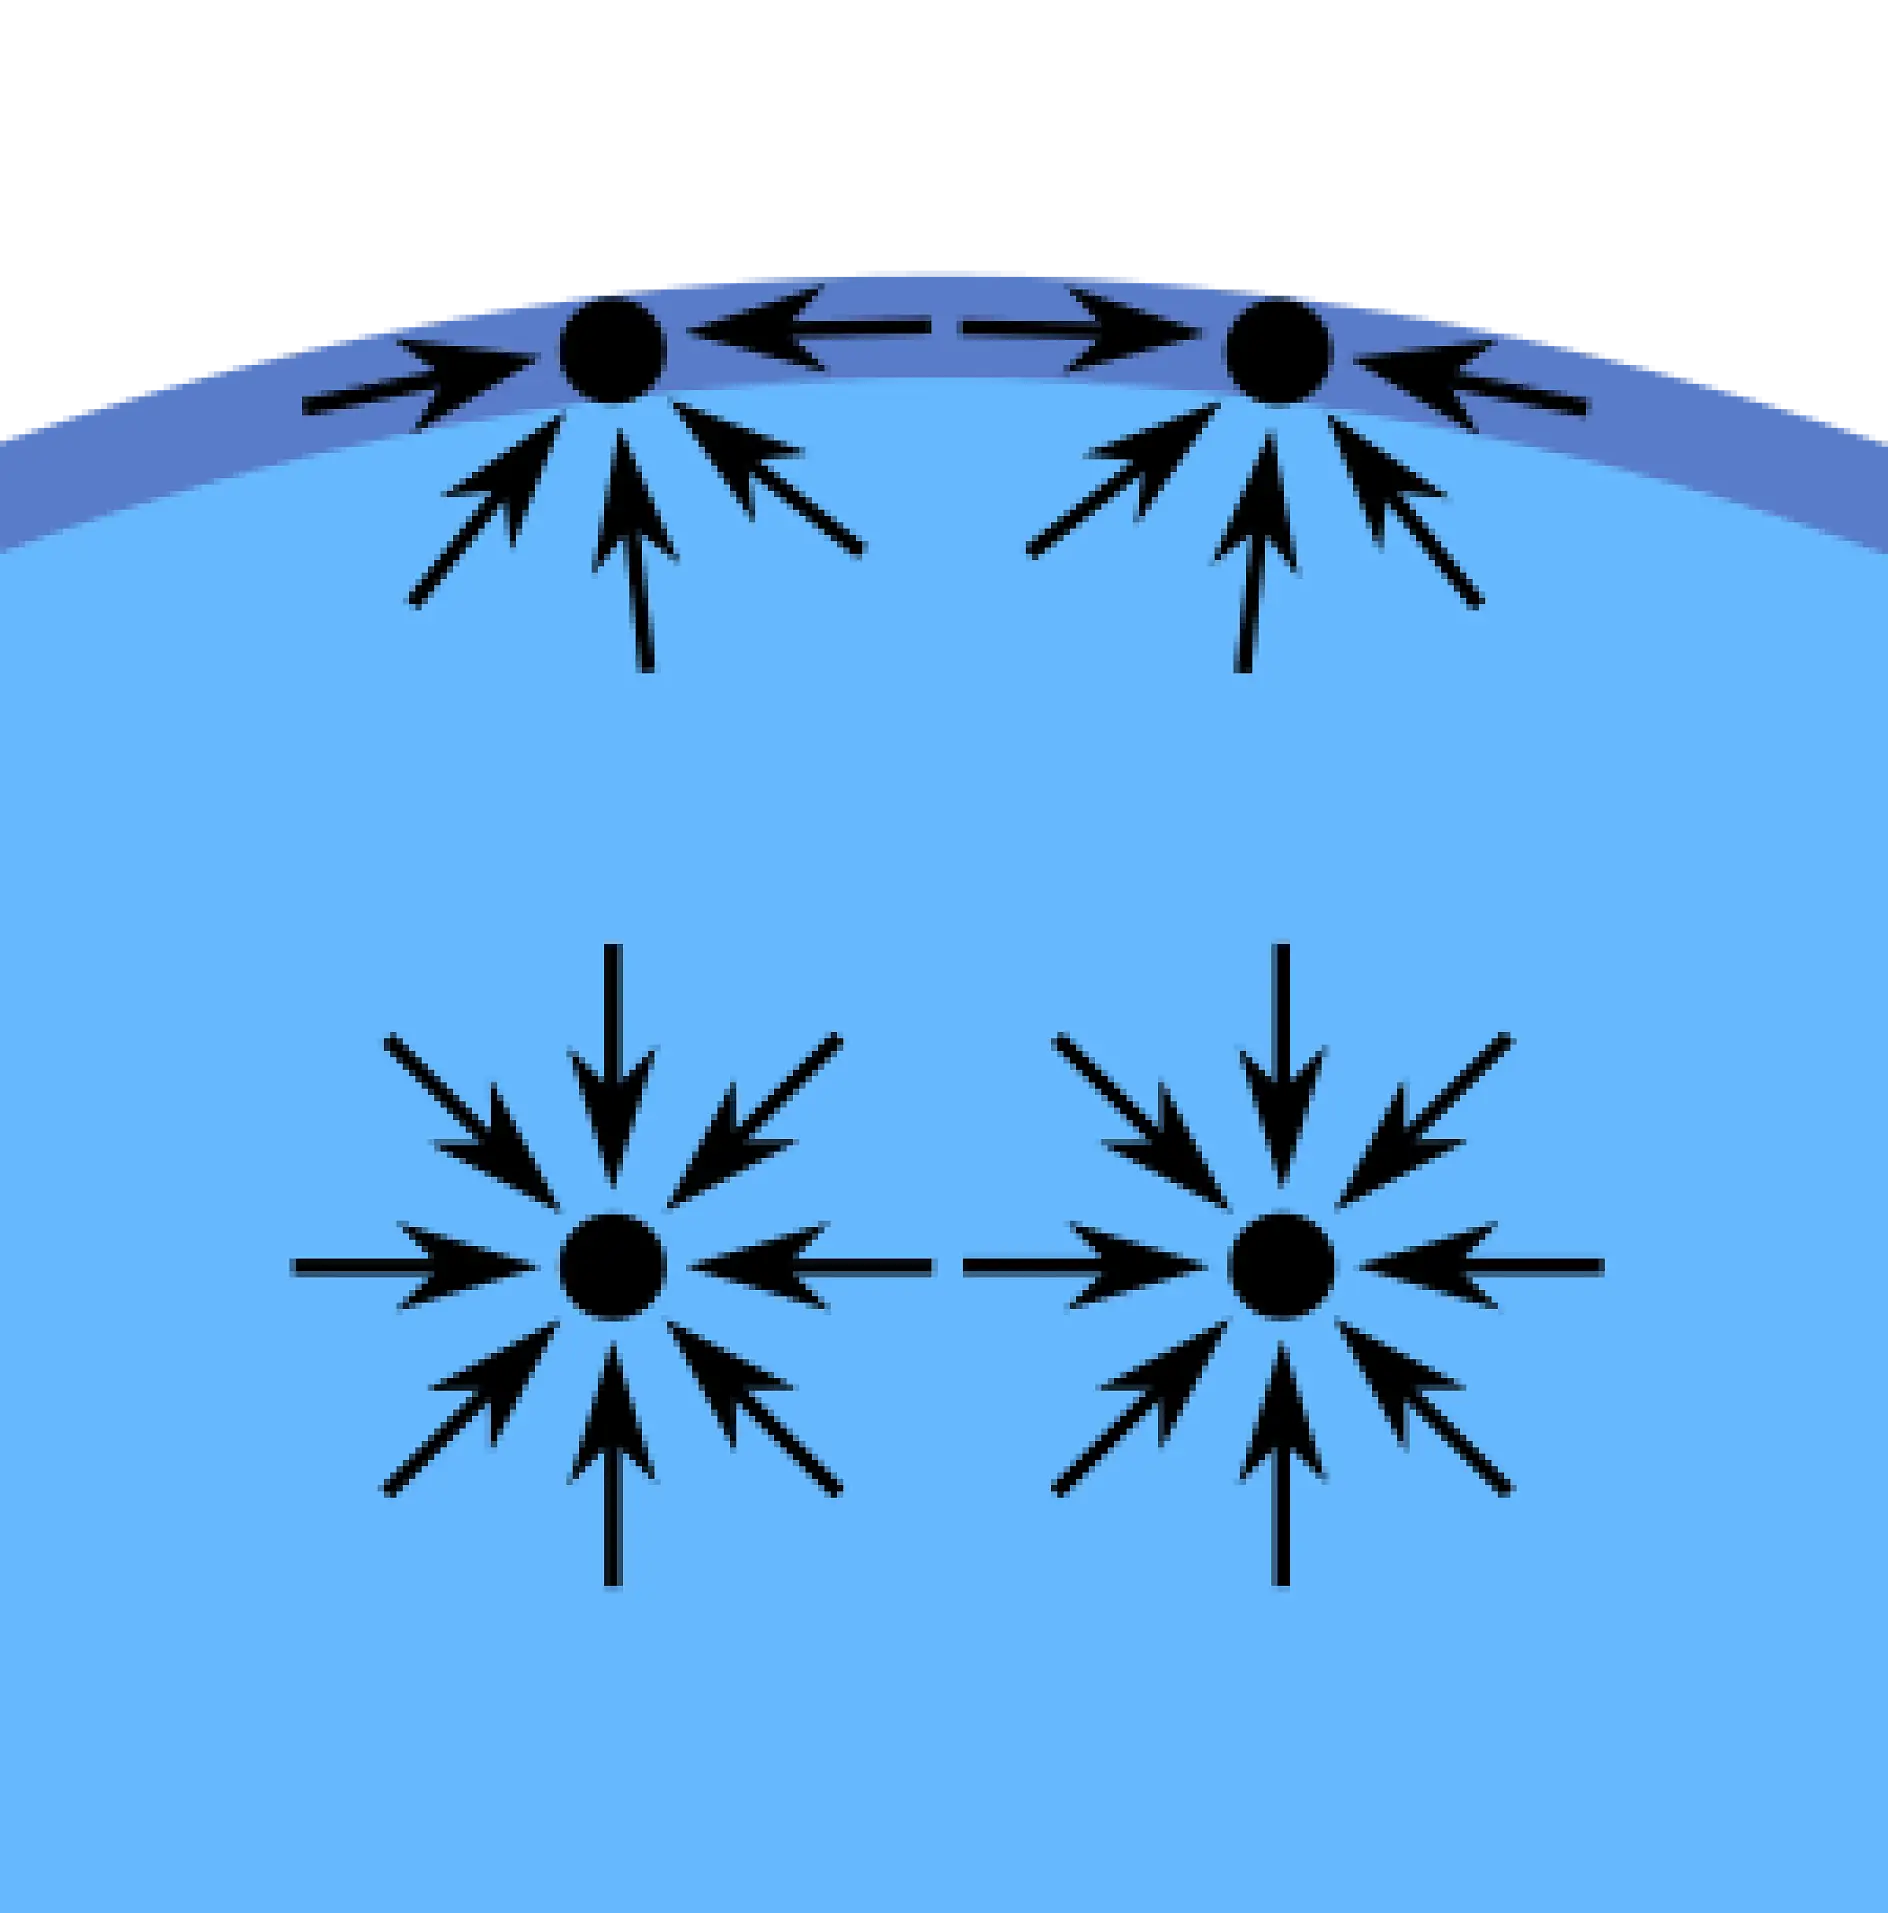 Die Kohäsionskräfte - d.h. die (innere) Anziehung - zwischen Molekülen von Flüssigkeiten erzeugen das Phänomen der "Oberflächenspannung". Die Moleküle an der Oberfläche von Wasser in einem Glas zum Beispiel sind nicht auf allen Seiten von anderen Wassermoleküle umgeben. So werden sie ins Innere des Wassers gezogen, das sie stärker von den Wassermolekülen neben und unter ihnen angezogen werden. Diese Anziehung ist höher als die der Luftmoleküle über ihnen. Am Ende erzeugt diese innere Kraft die Oberfläche, die Wasser und Luft trennt.